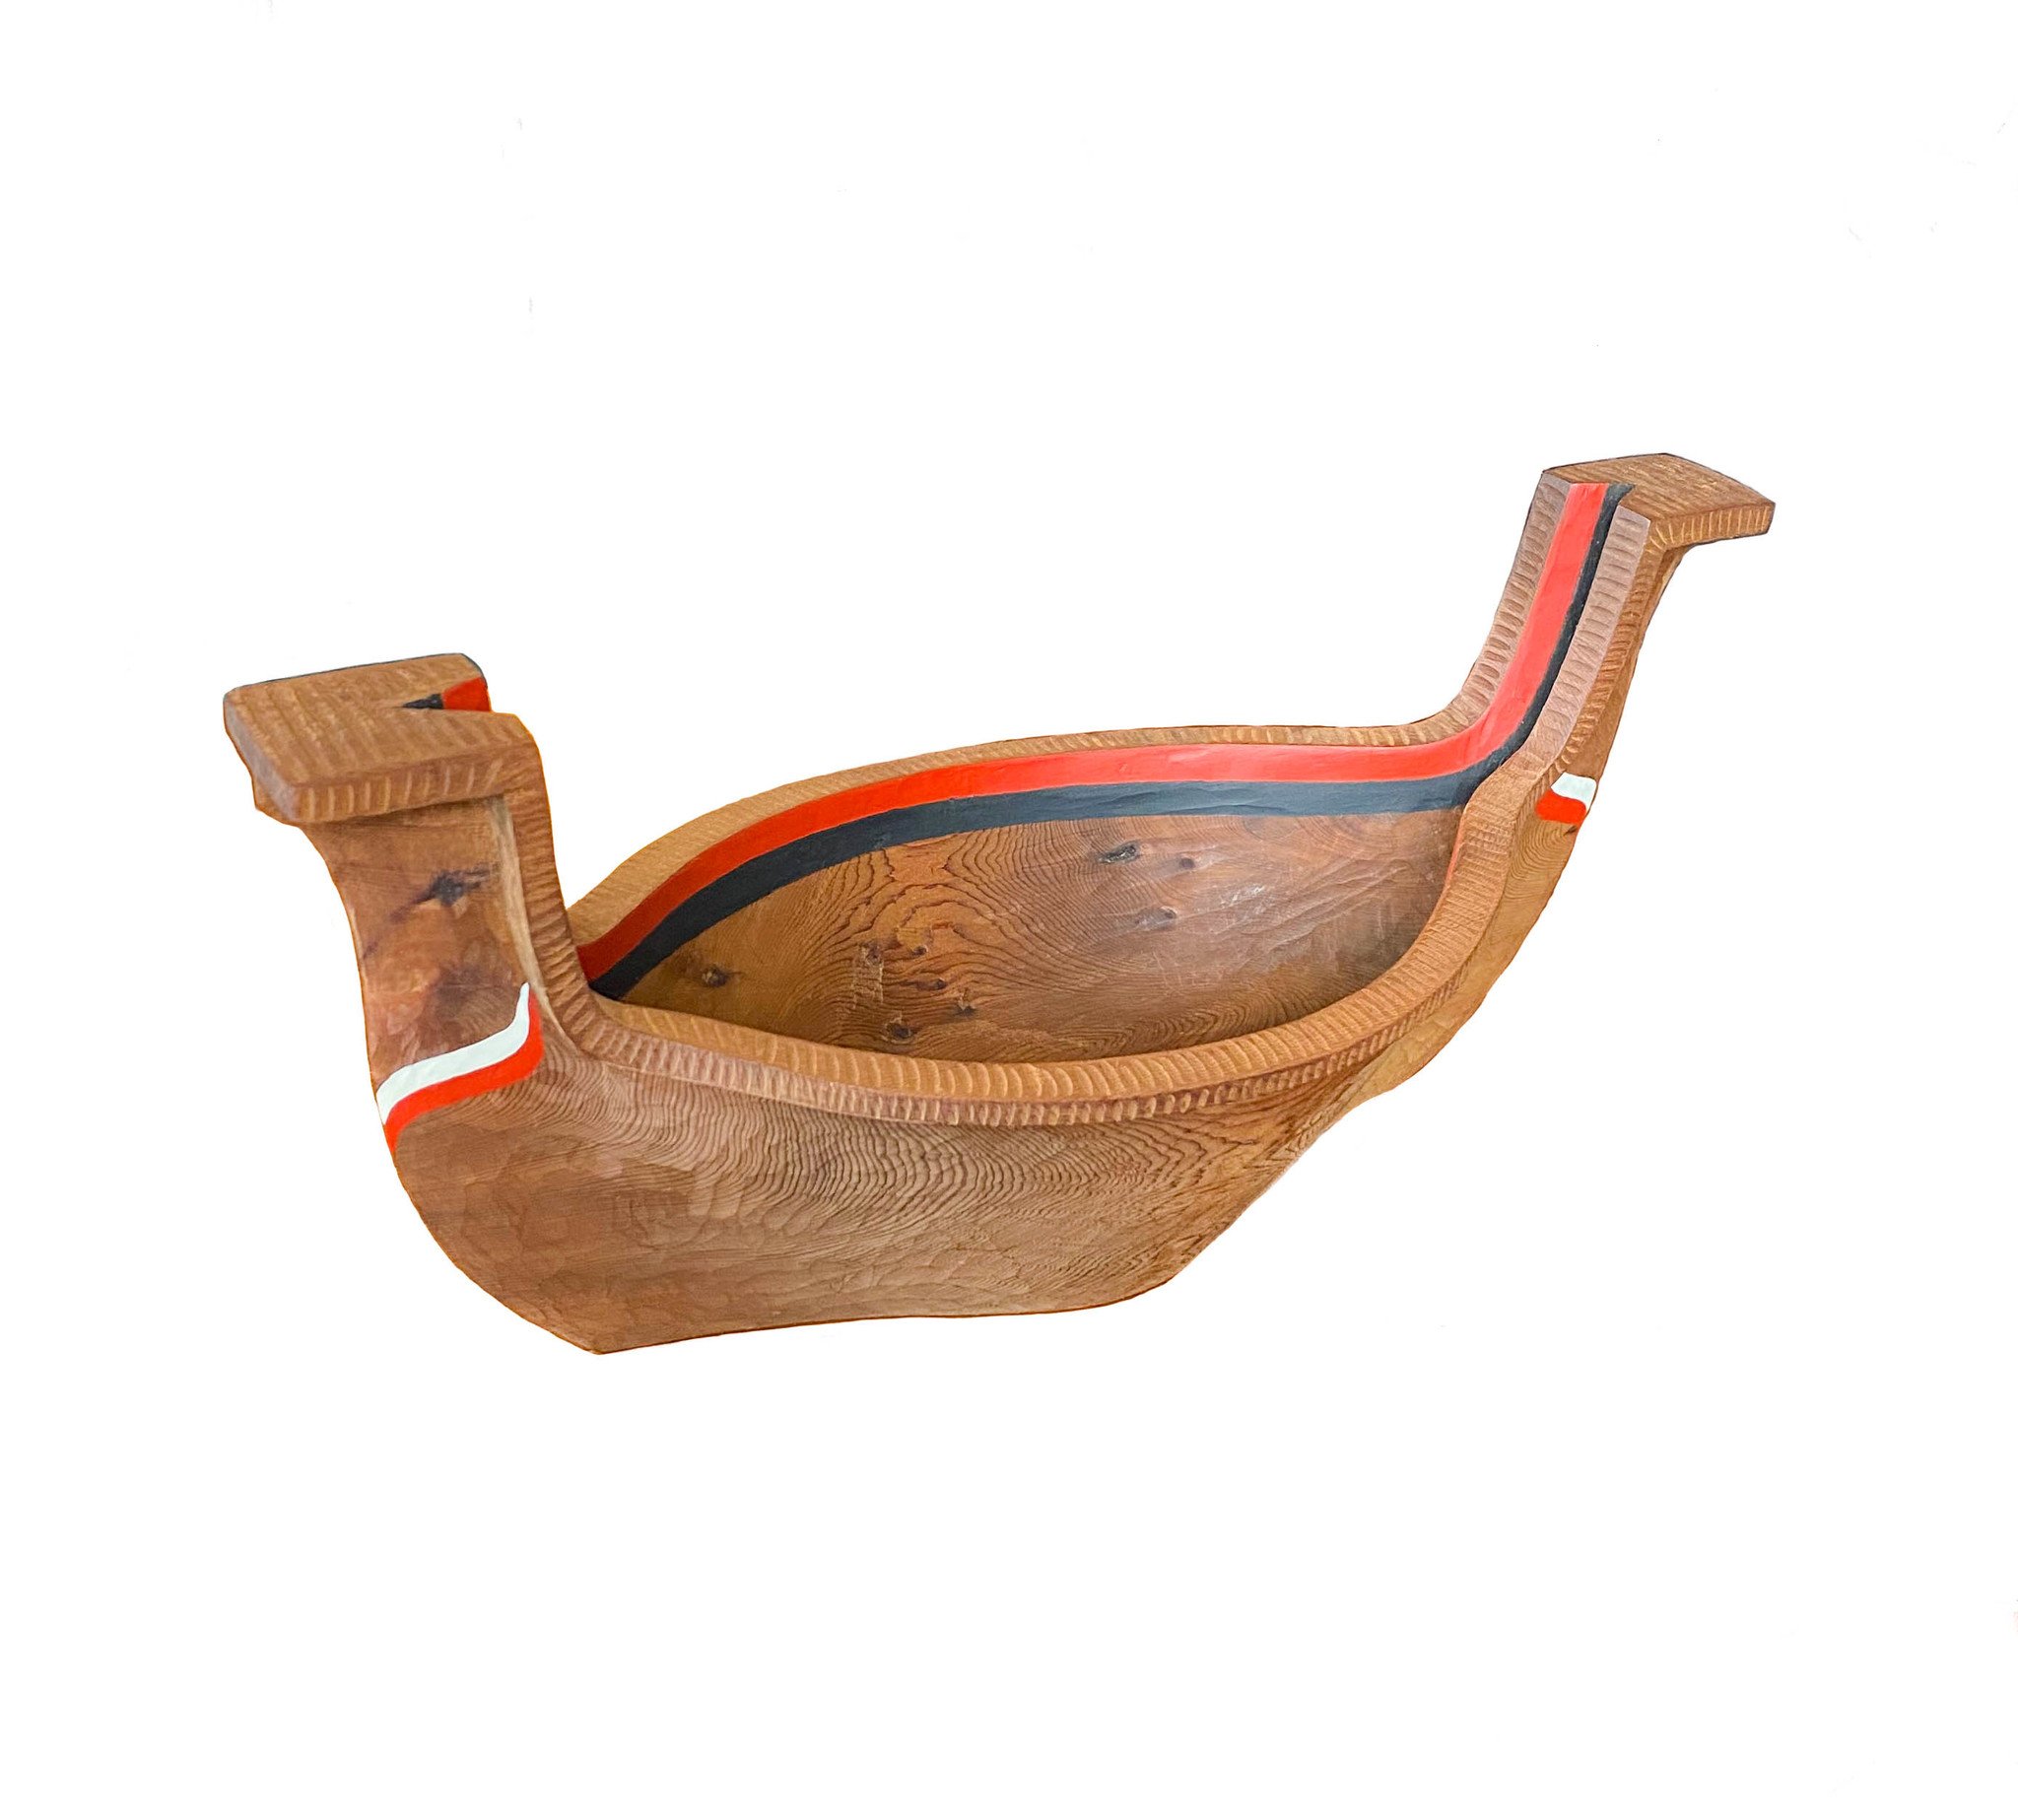 Carved Canoe Bowl  (Coast Salish)